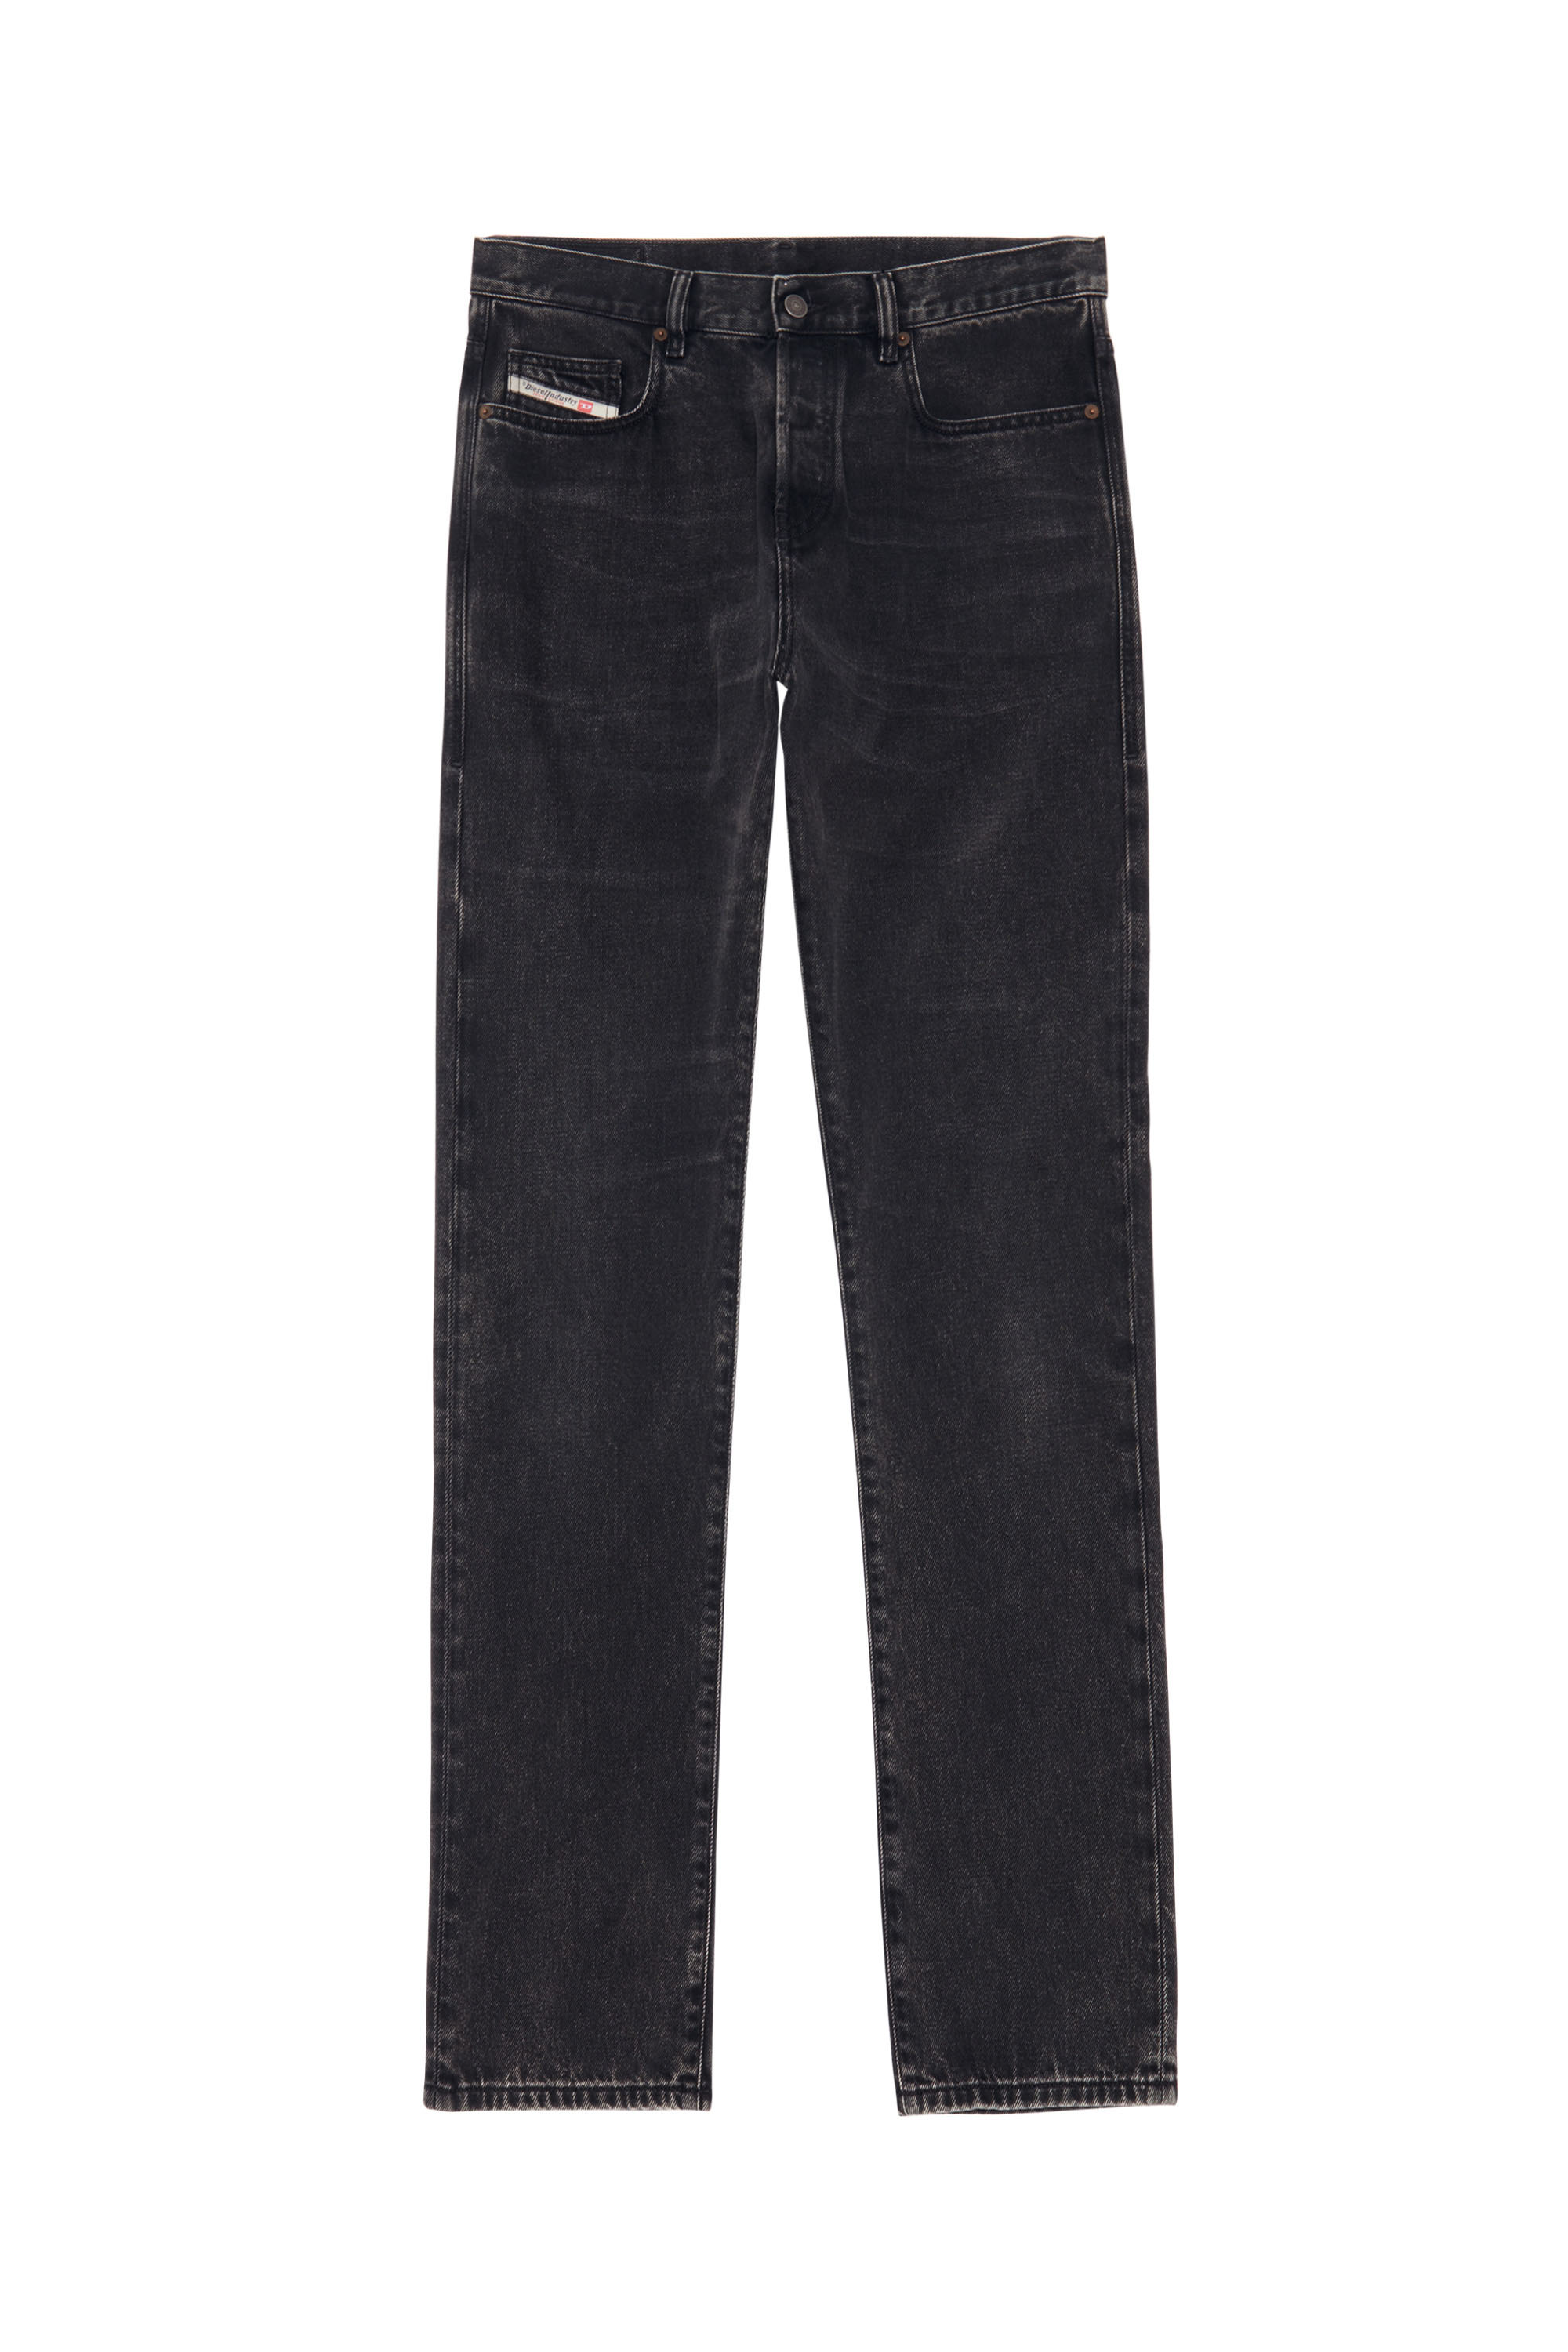 2015 BABHILA Z870G Skinny Jeans, Negro/Gris oscuro - Vaqueros